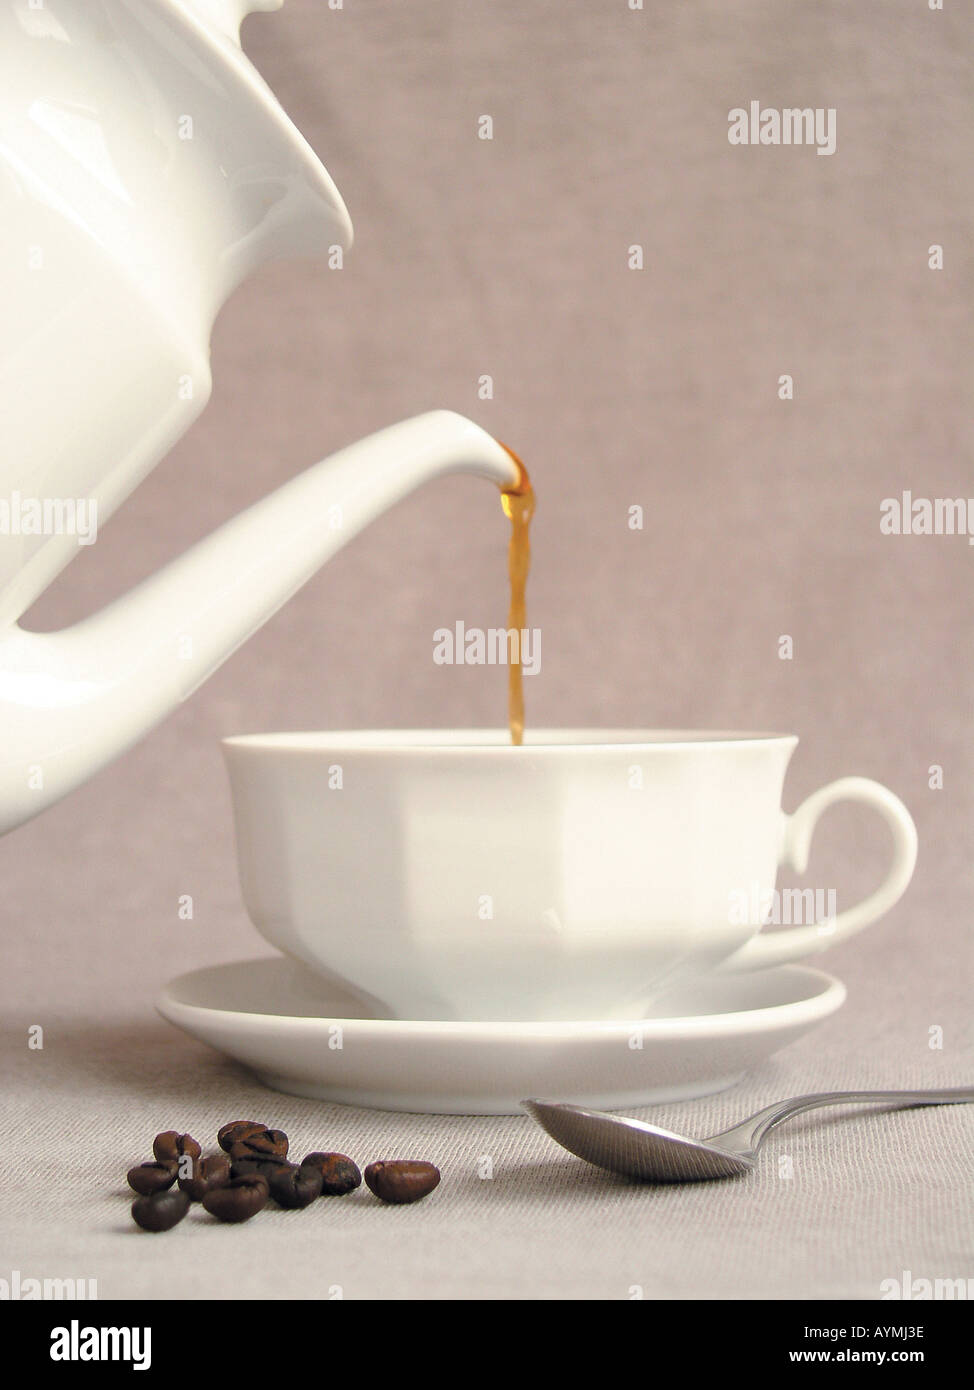 Kaffee in eine Tasse einschenken Stock Photo